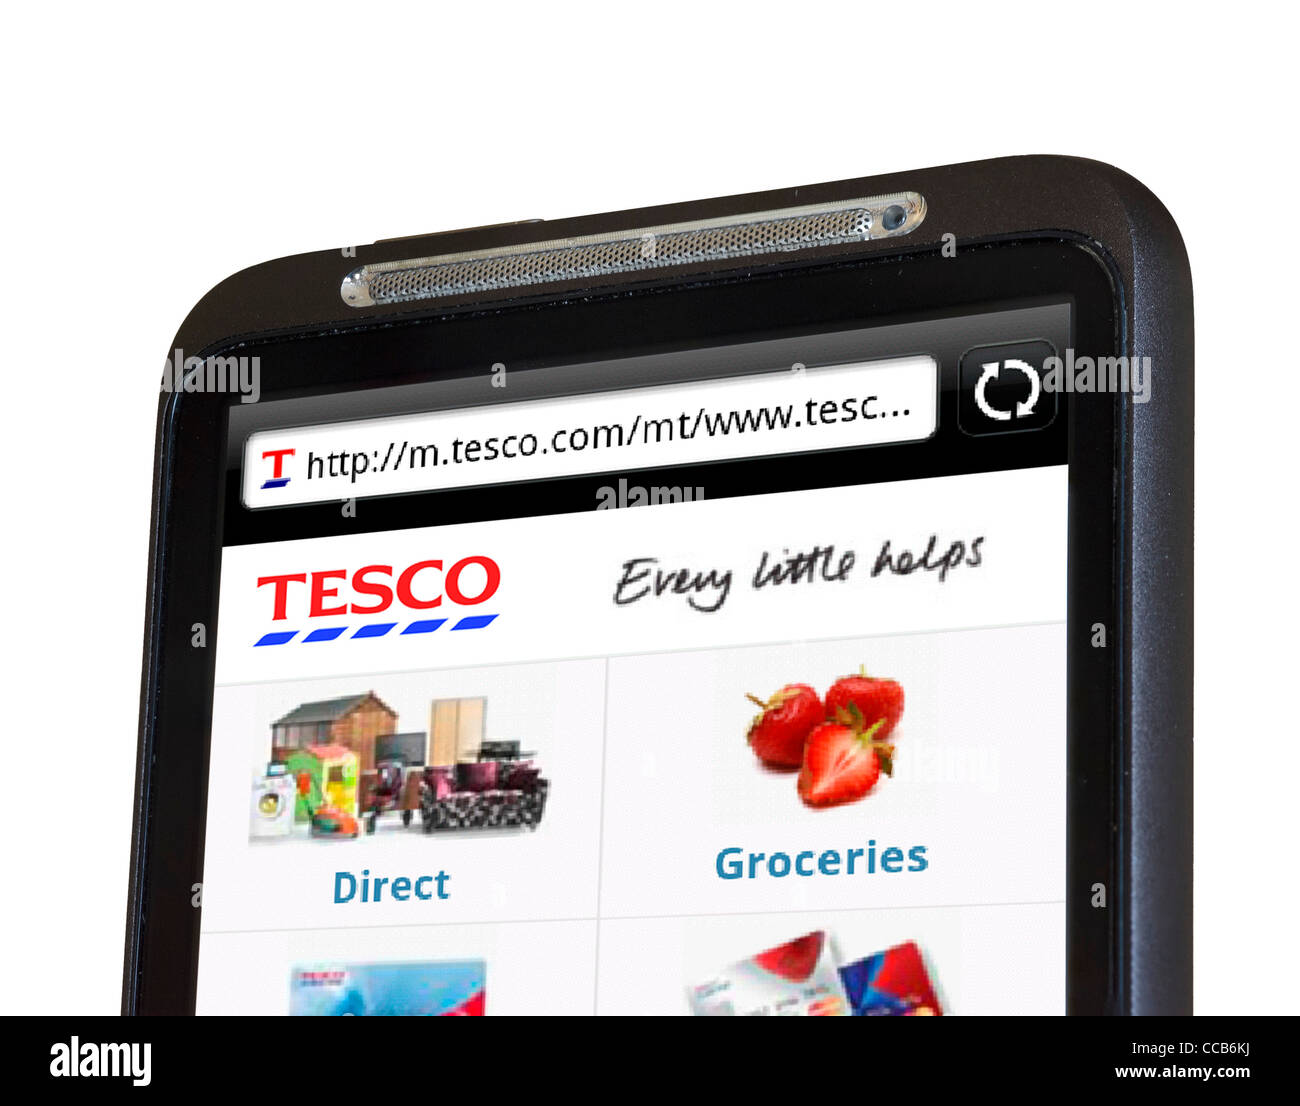 Achat en ligne à Tesco sur un smartphone HTC Banque D'Images